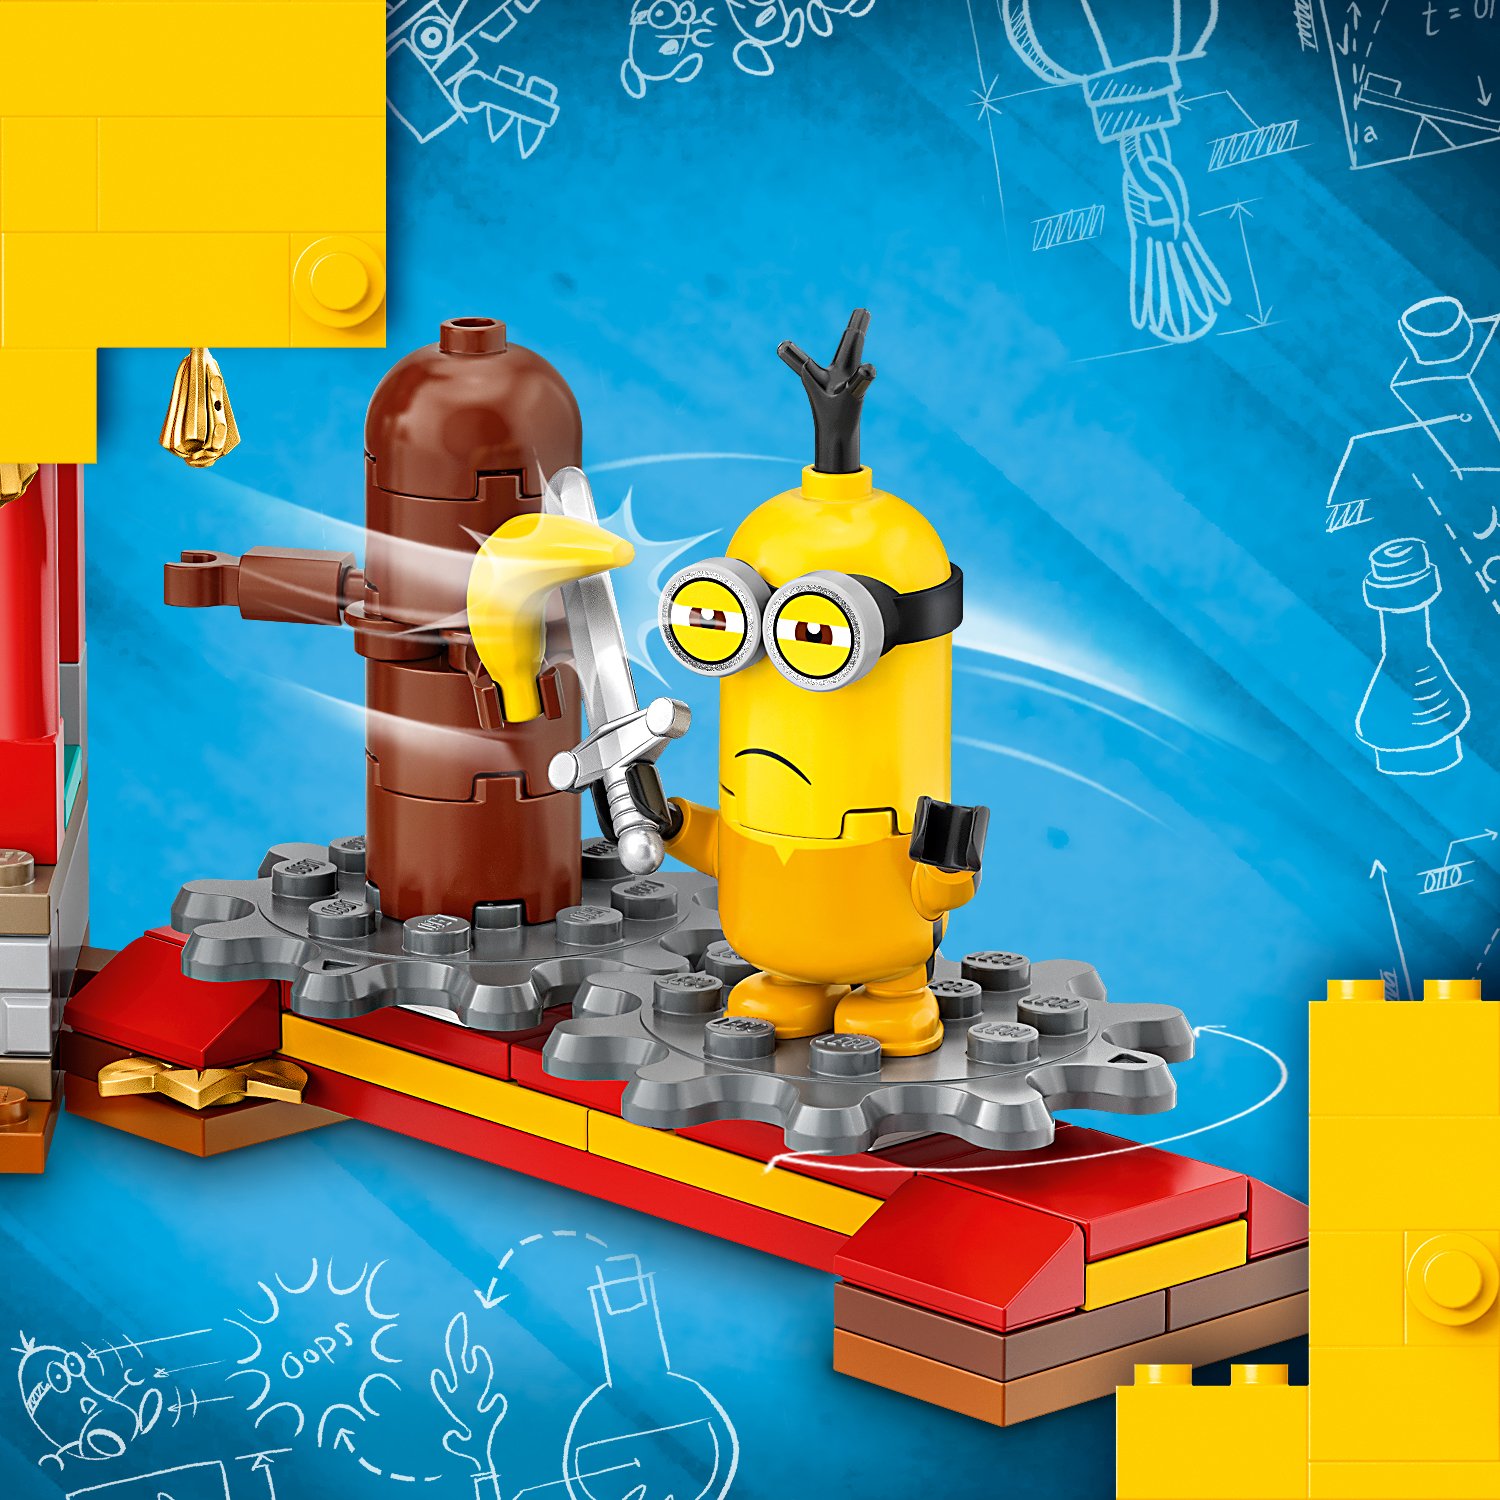 Lego Minions 75550 Бойцы кунг-фу